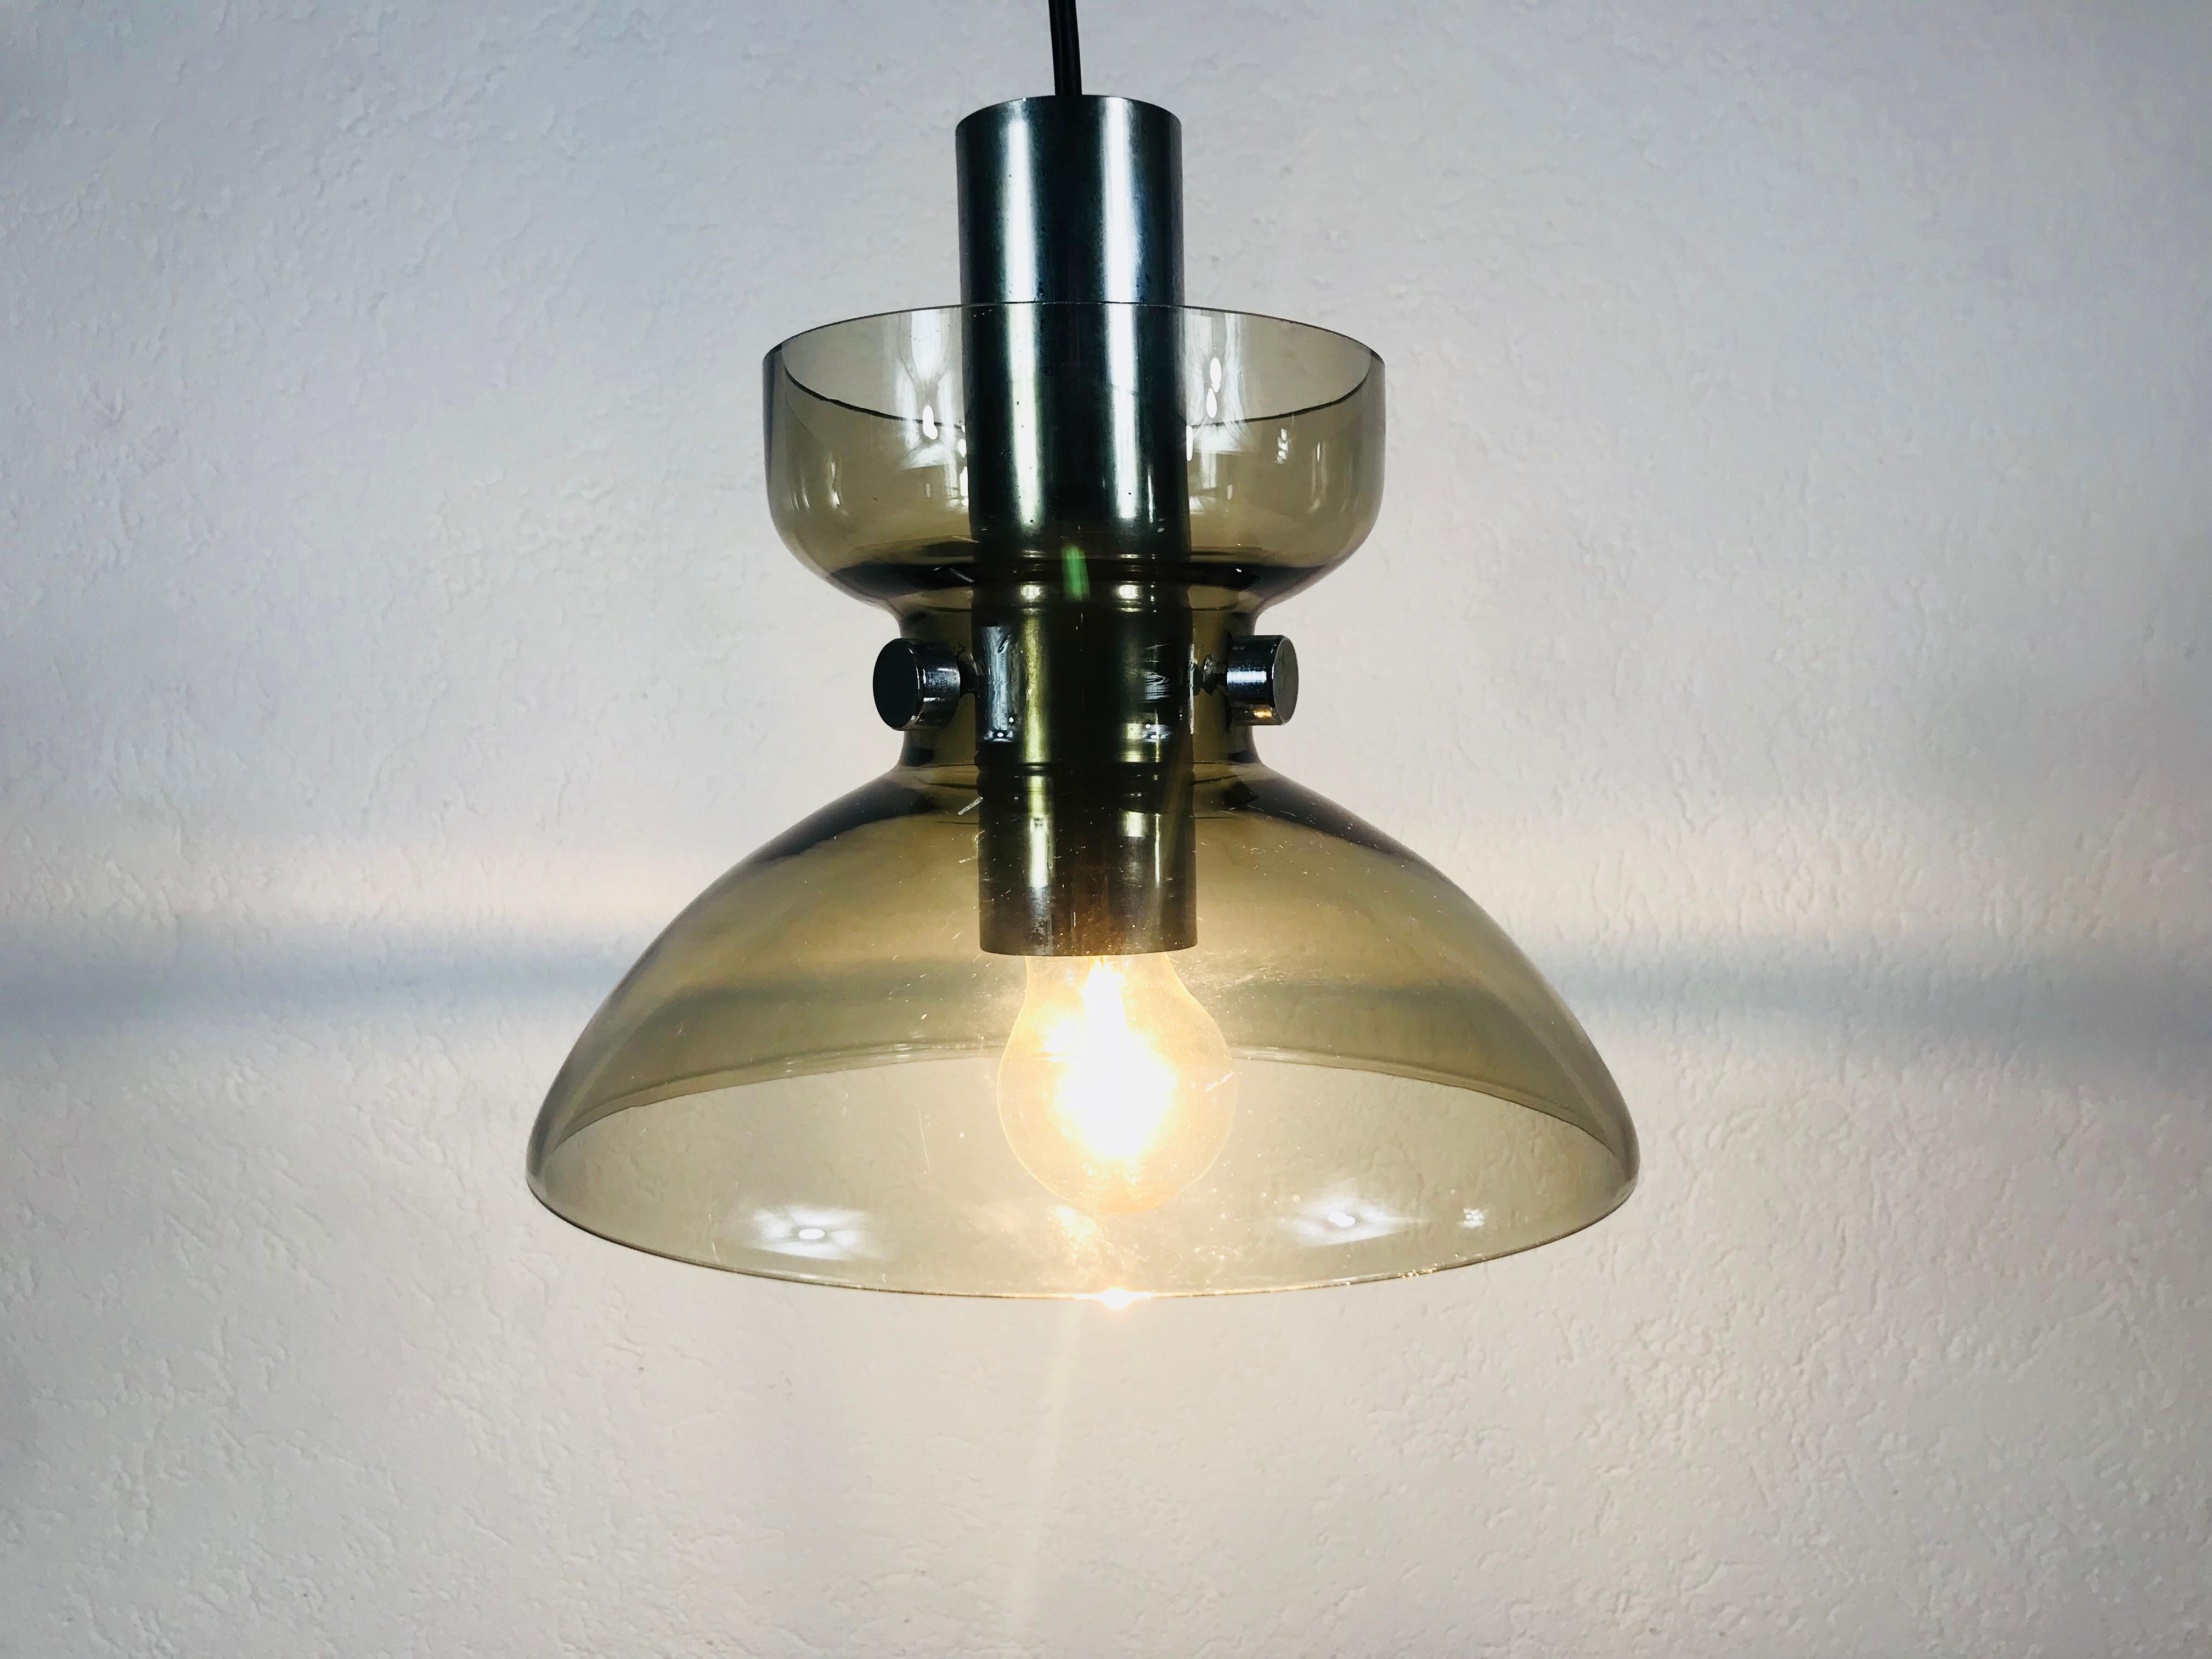 Une lampe pemdant vintage de Glashütte Limburg fabriquée dans les années 1970 en Allemagne. Il est fascinant avec sa belle forme. Il est fixé au corps métallique par trois vis à métaux.

Le luminaire nécessite une ampoule E27.